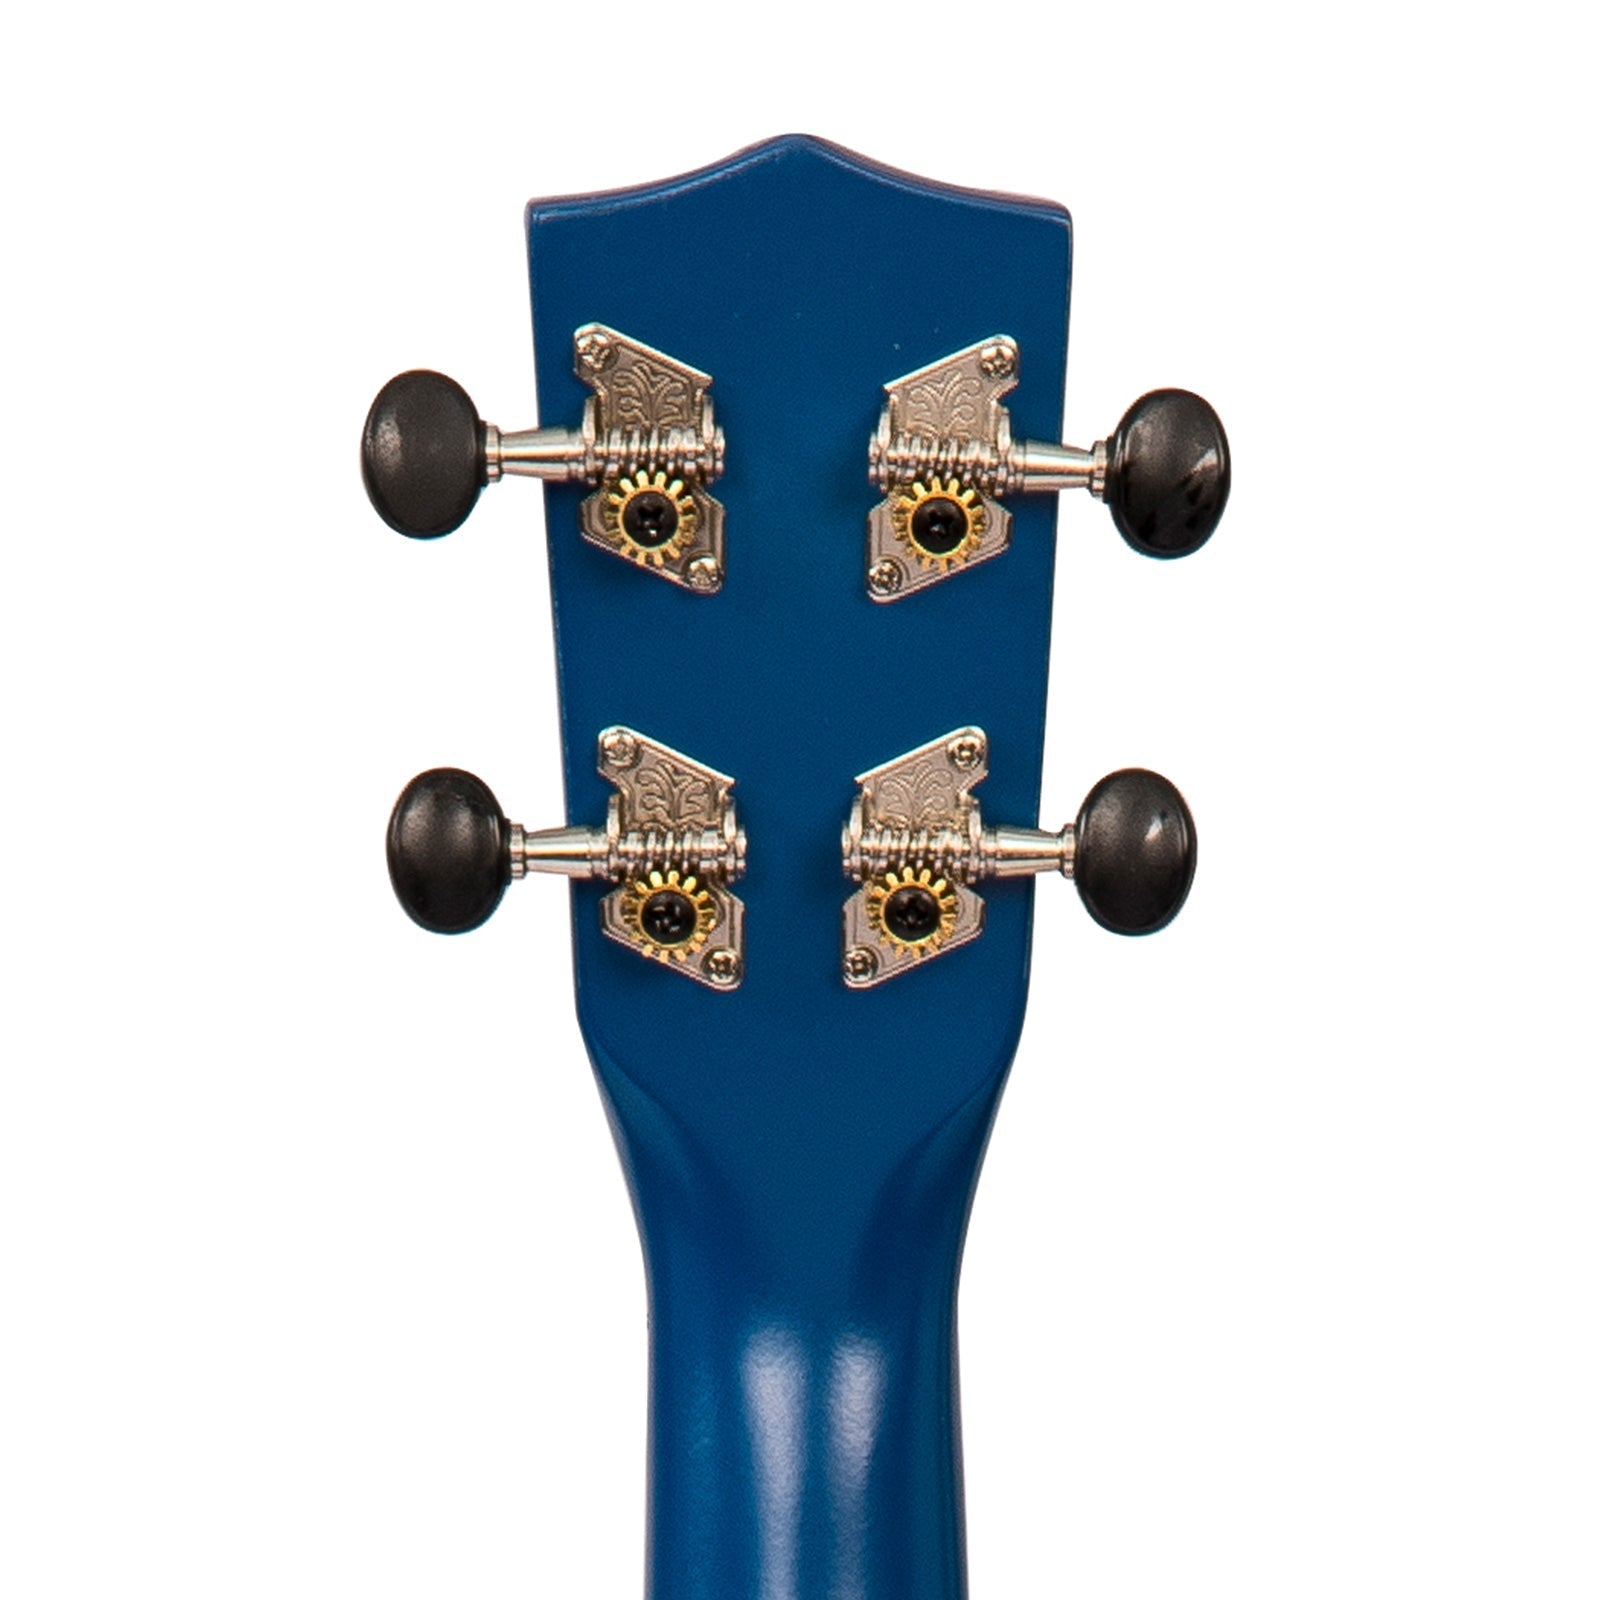 Vintage Soprano Ukulele ~ Satin Blue, Ukuleles for sale at Richards Guitars.